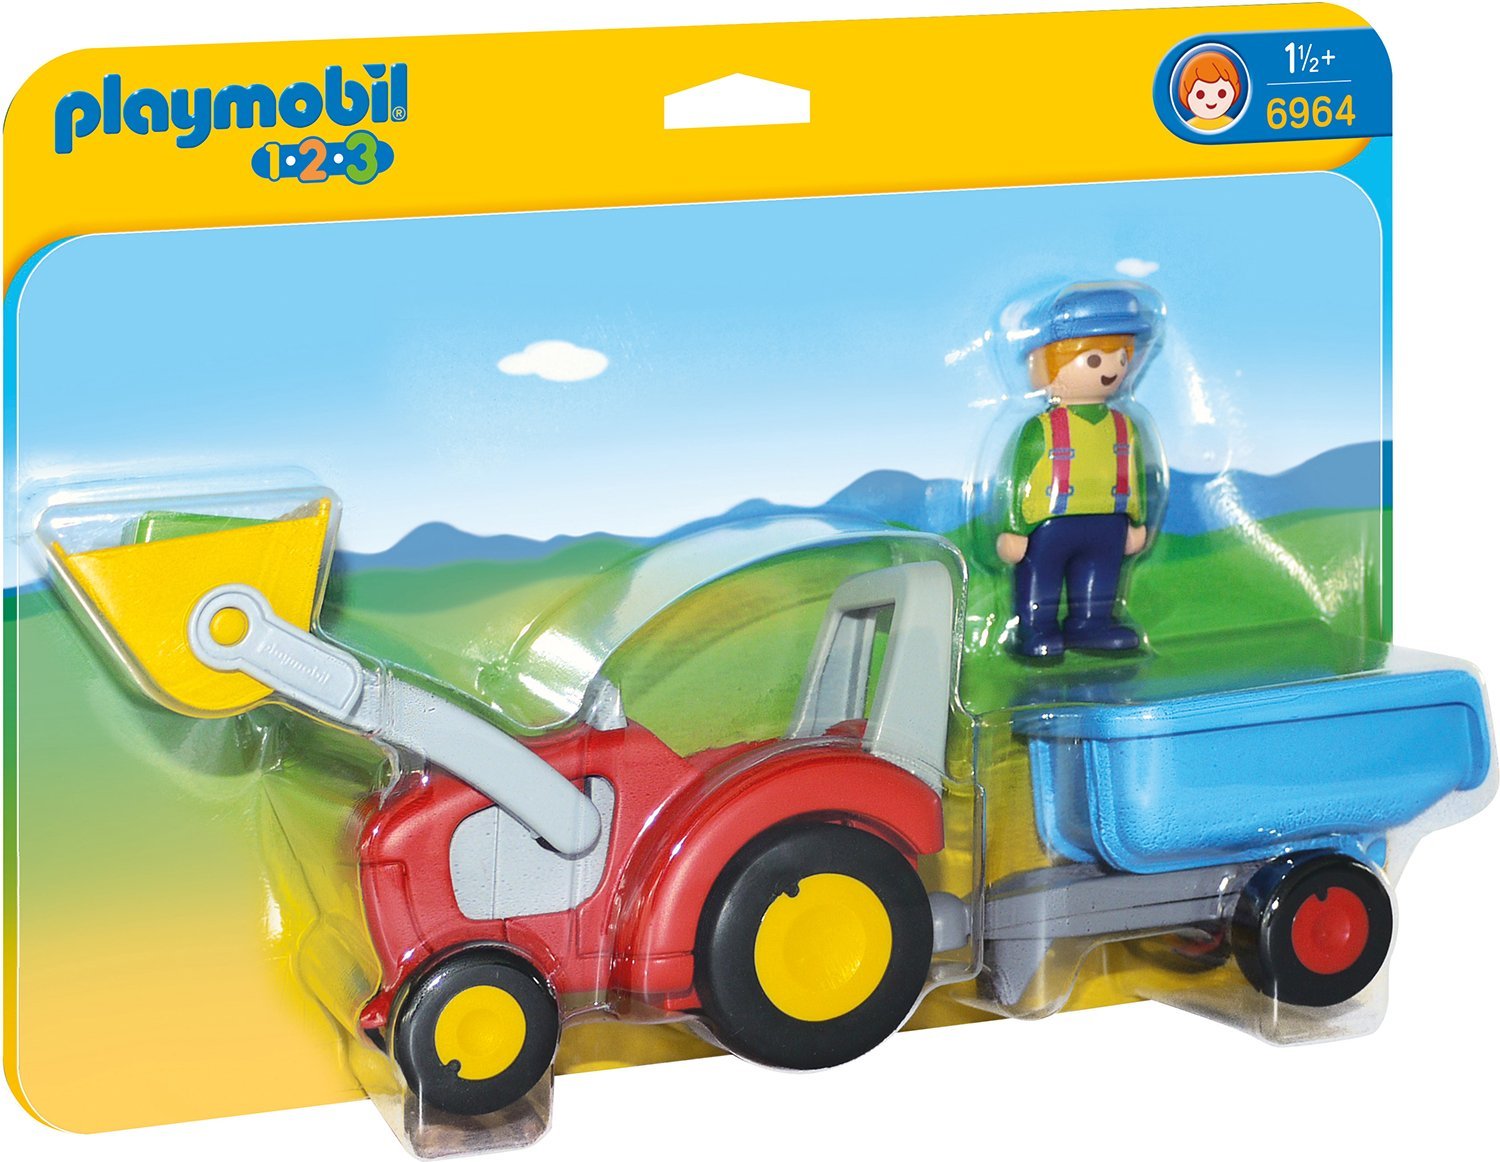 Playmobil 6964 - 1.2.3 Traktor mit Anhänger